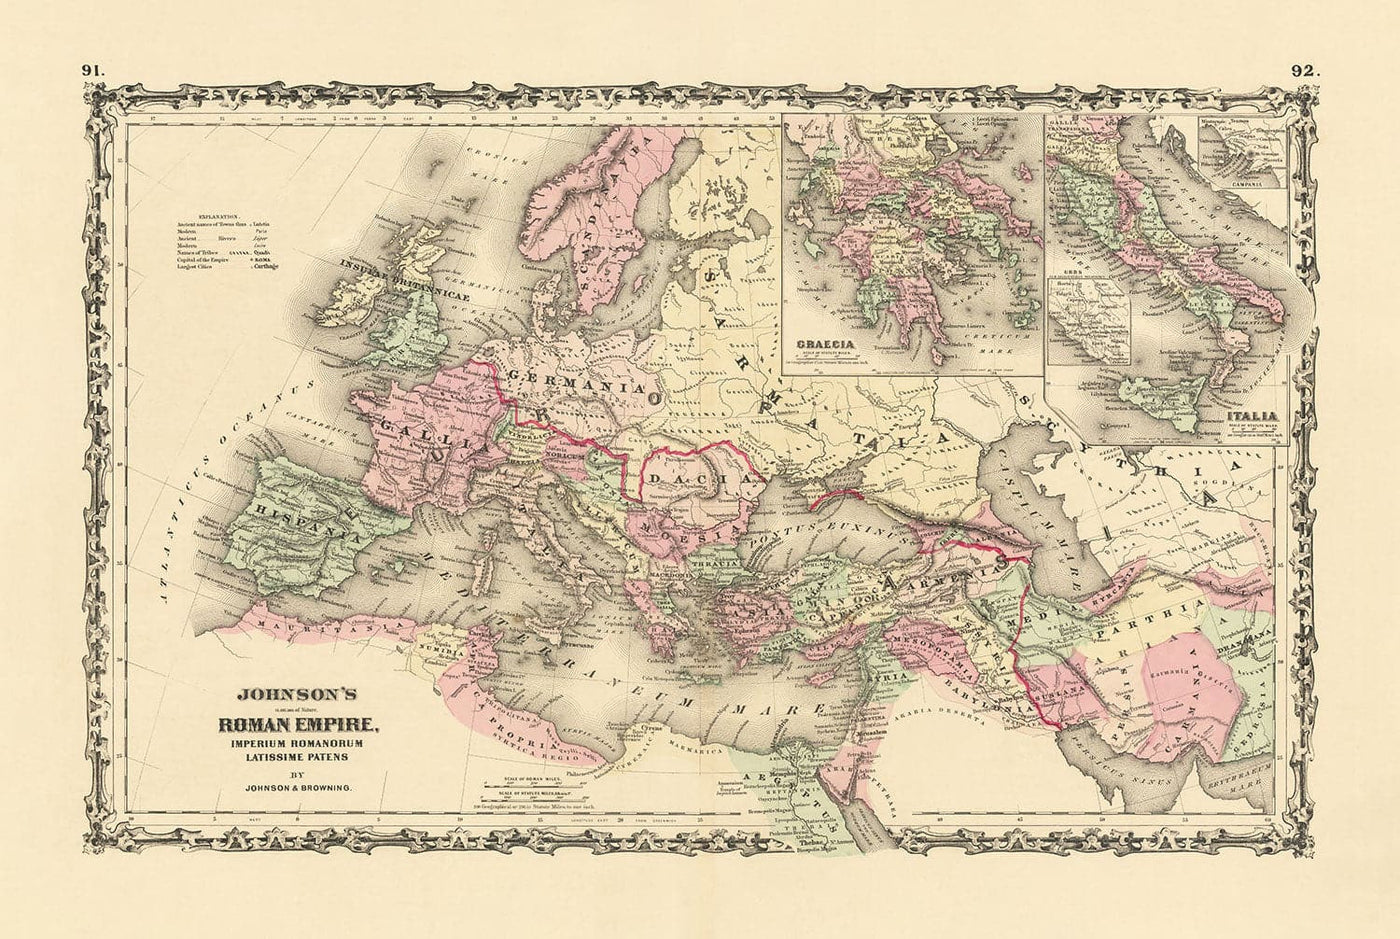 Alte römische Reichkarte von Europa, Afrika & Asien von Johnson und Browning - Historisches Diagramm des Byzantinischen Reiches